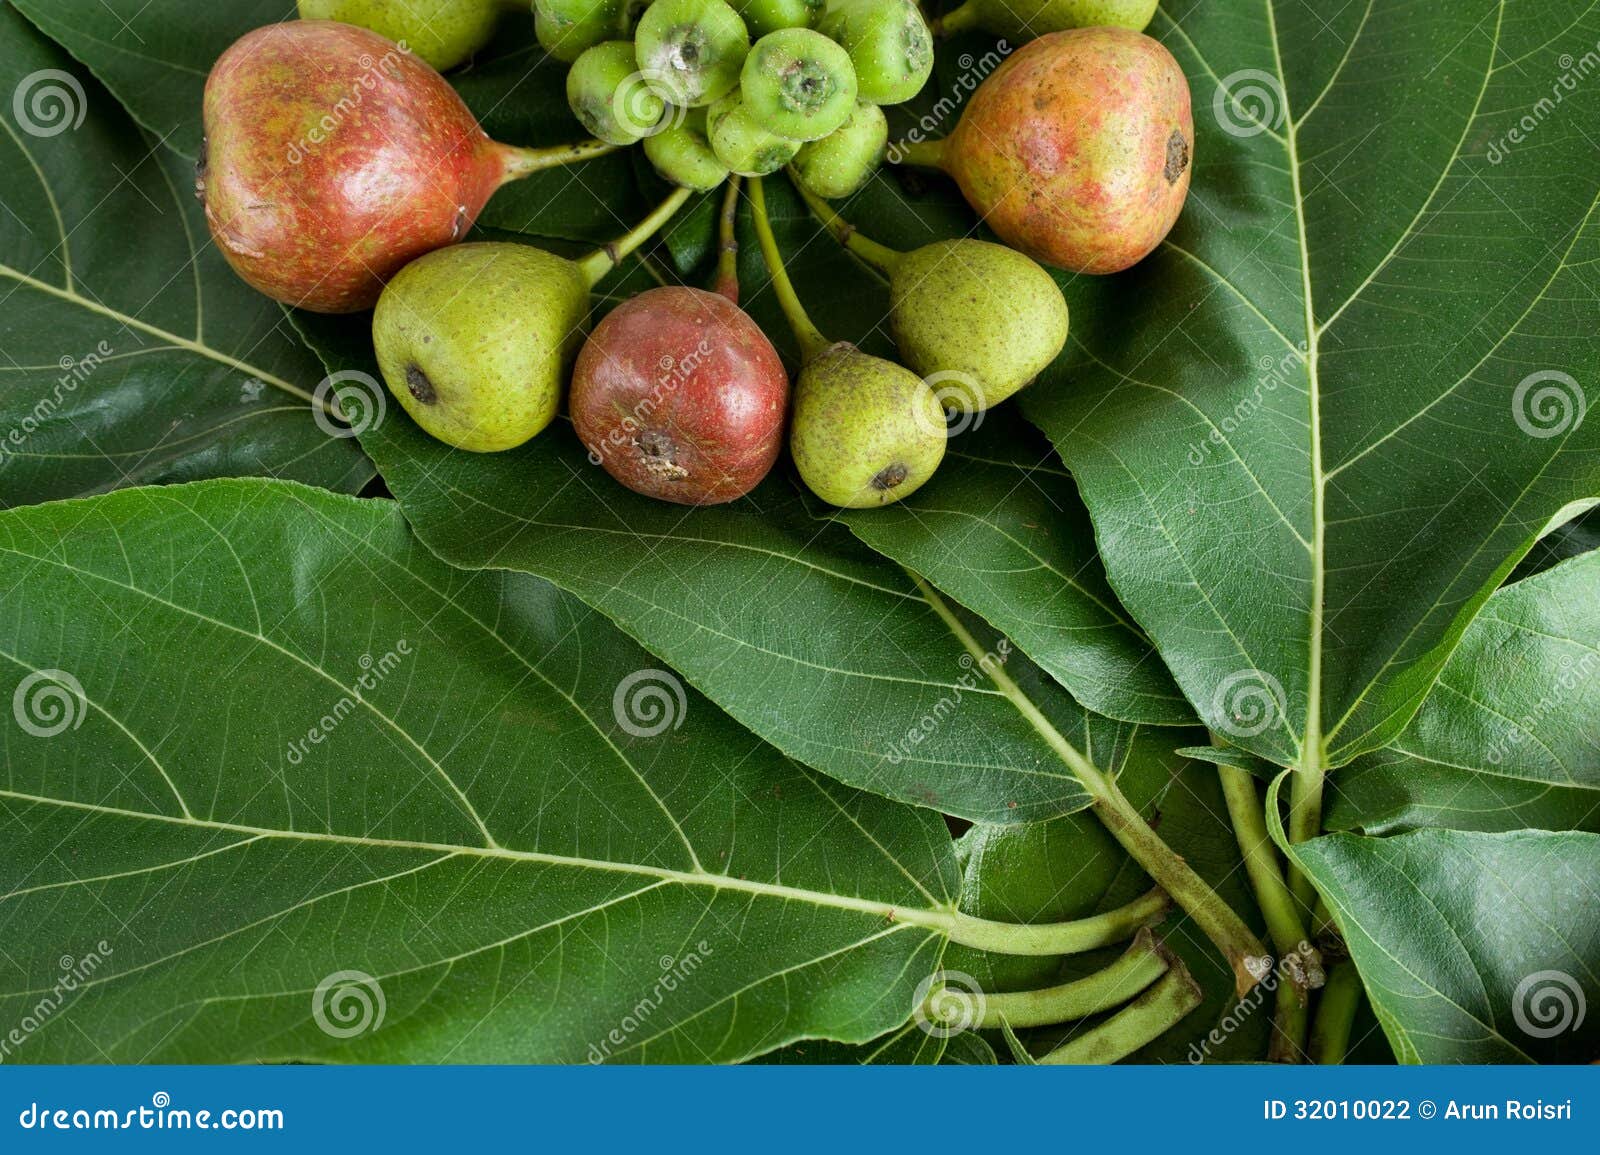 Fig tree,fruit photo. Image of - 32010022